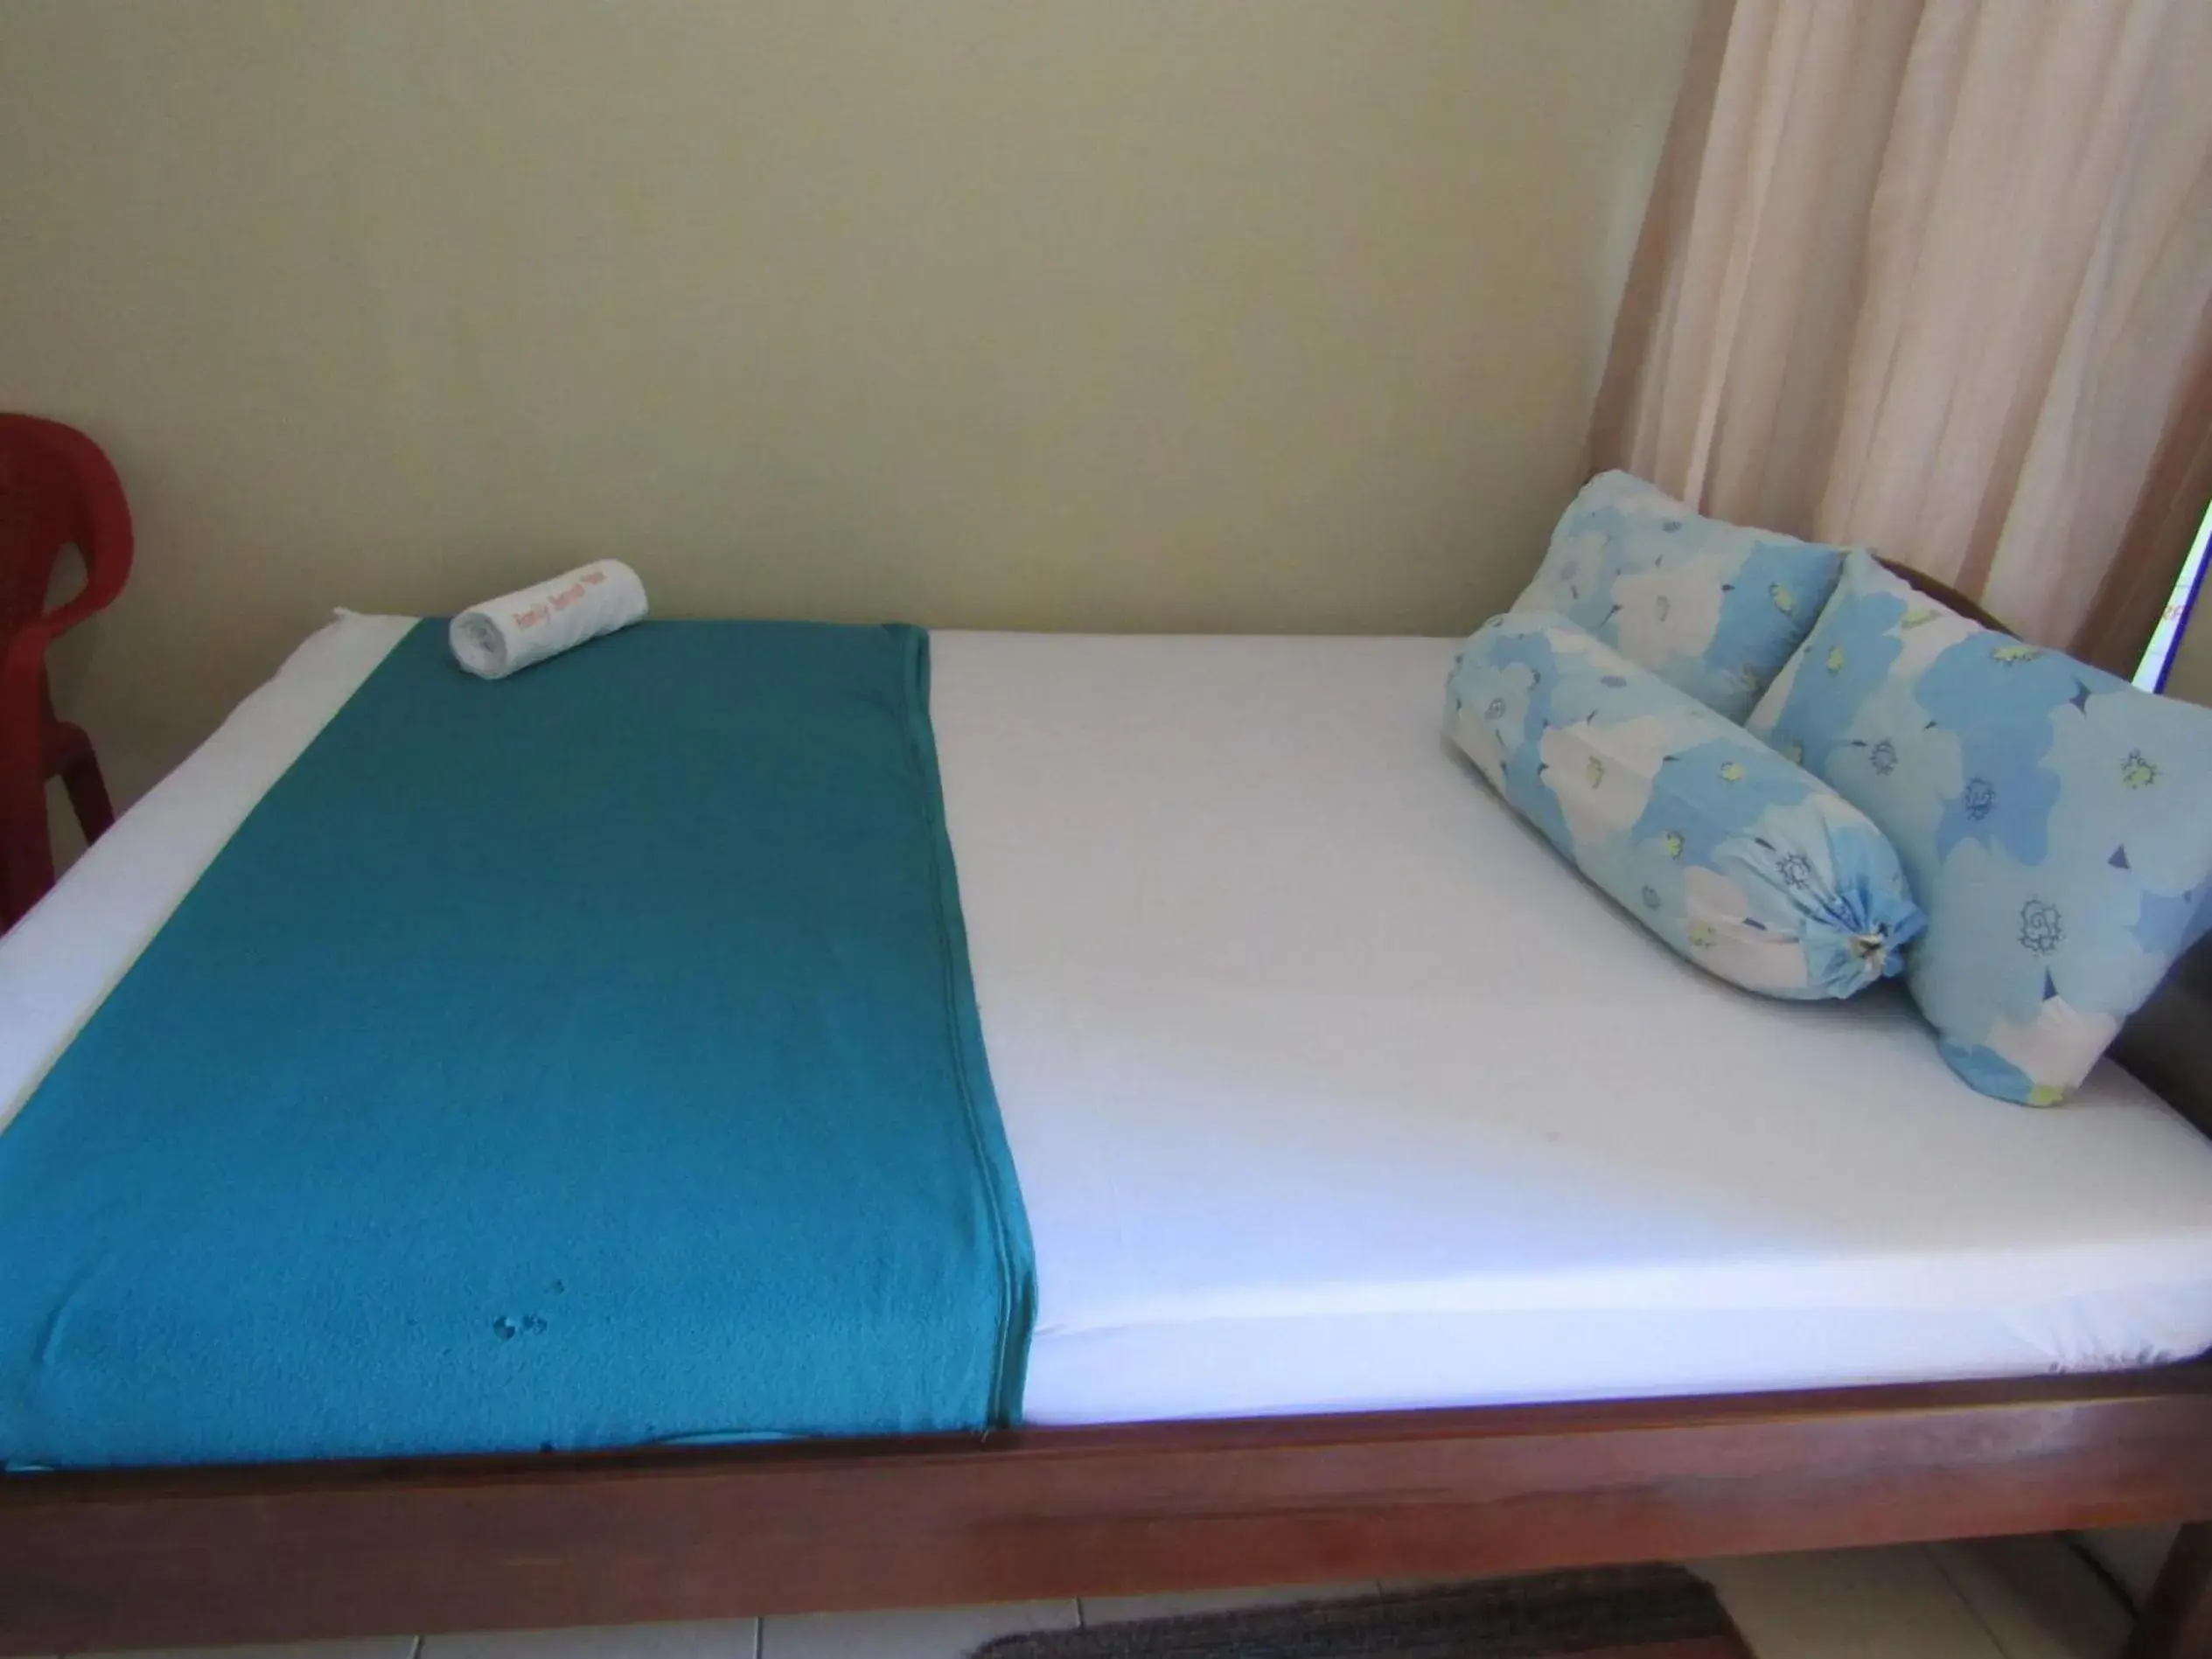 Bed in Hotel Family Syariah 1